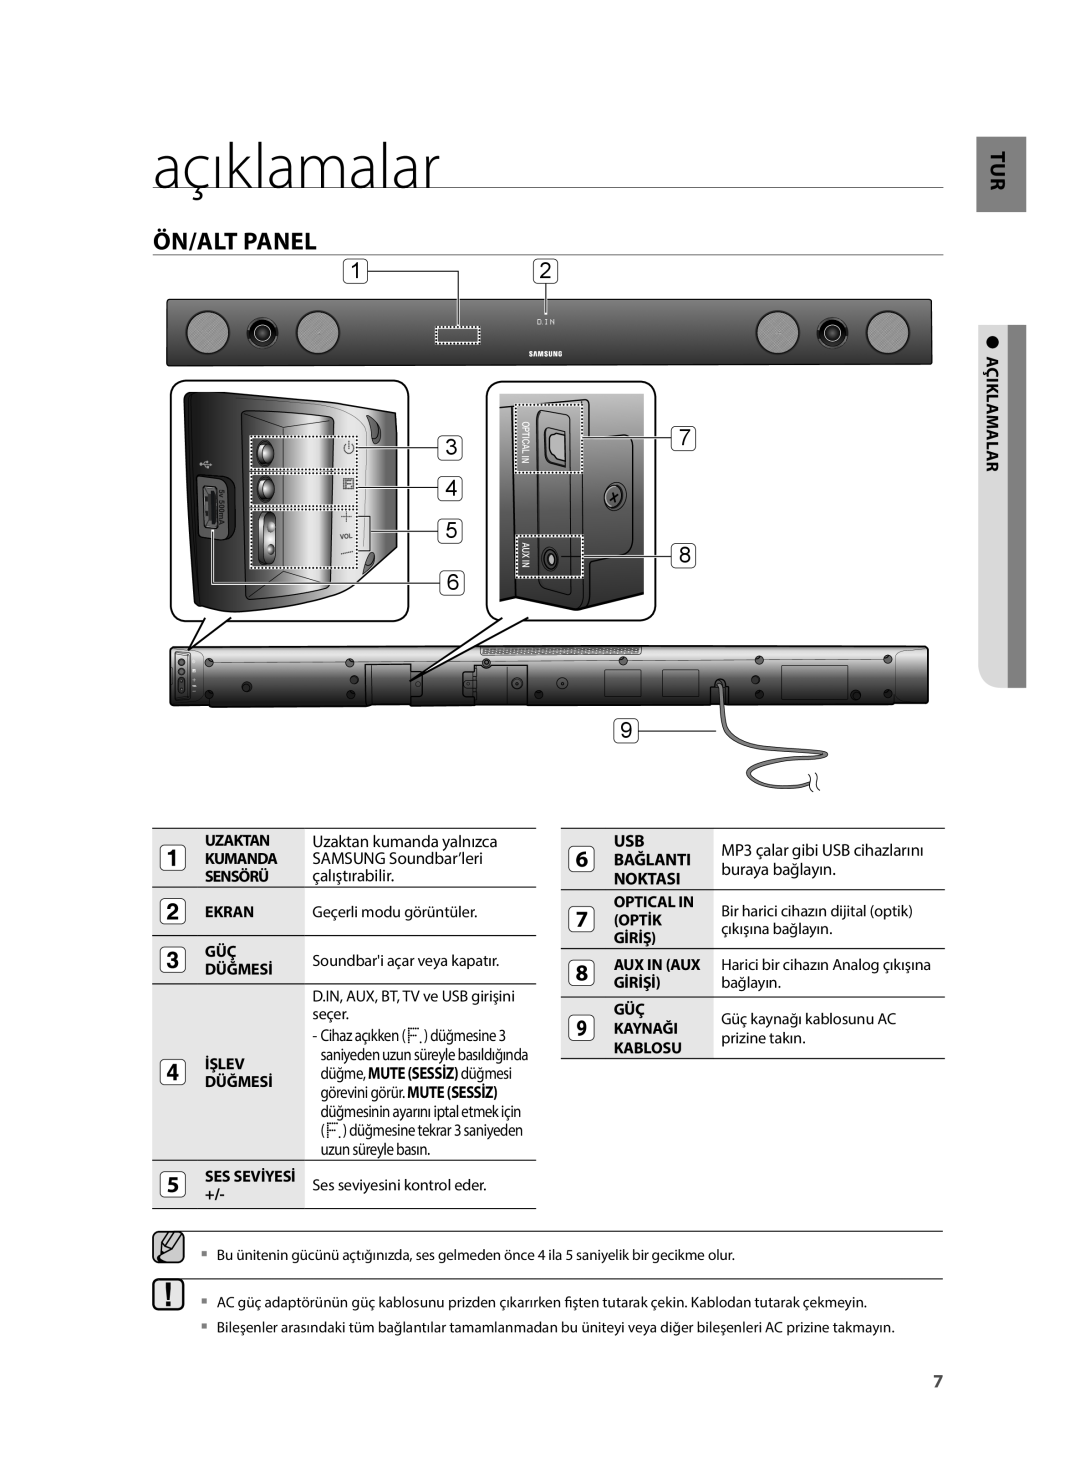 Samsung HW-H430/EN açıklamalar, Ön/Alt Panel, Uzaktan kumanda yalnızca, SAMSUNG Soundbar’leri, çalıştırabilir, Bağlanti 